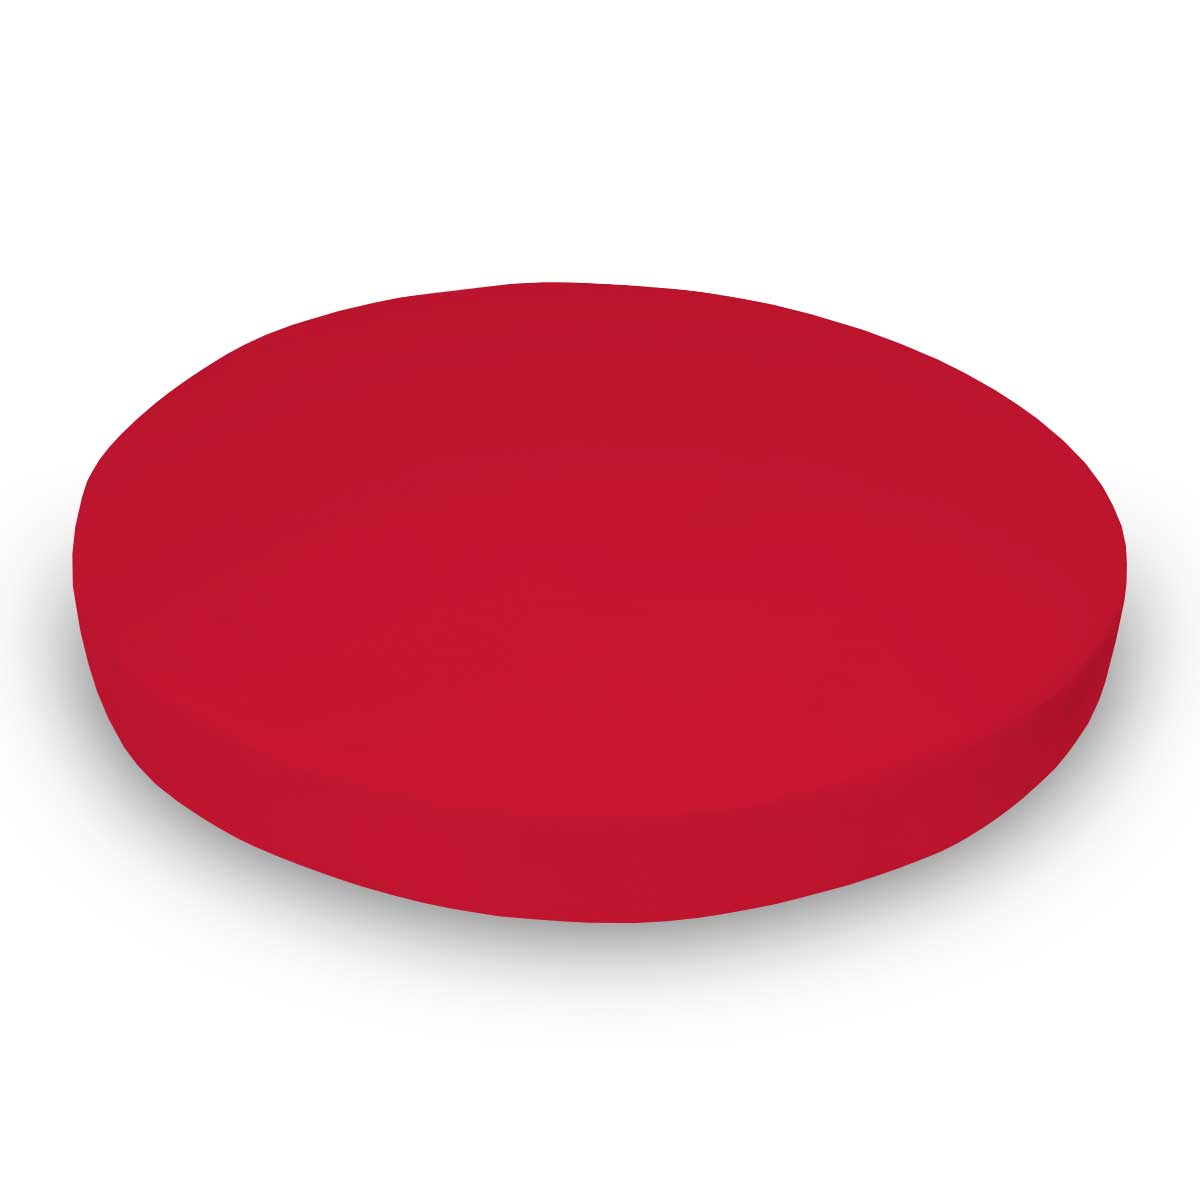 SK-RD Oval Crib (Stokke Sleepi) - Solid Red Jersey Knit  sku SK-RD